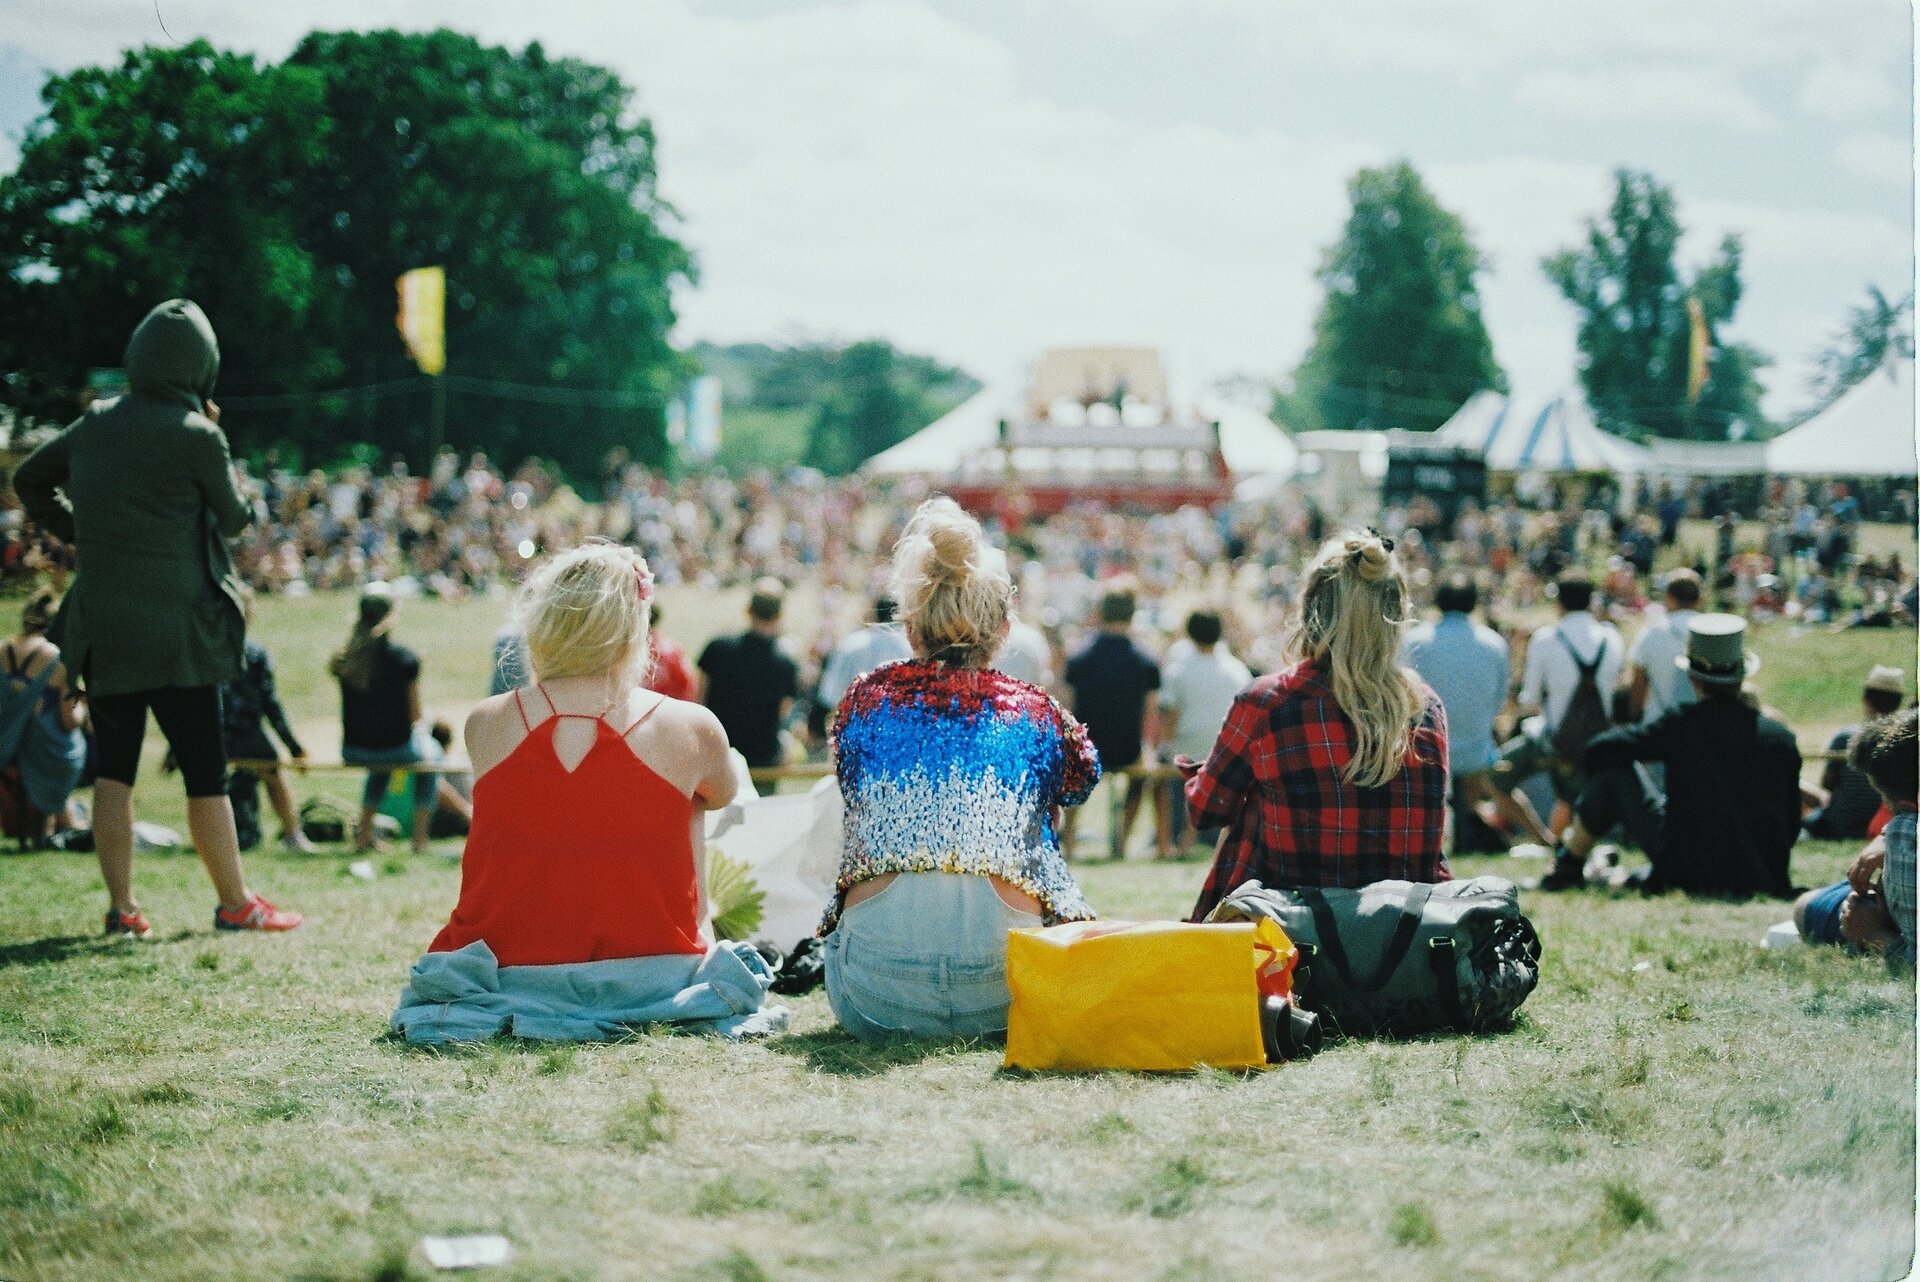 Zdjęcie przedstawia młodzież siedzącą na trawie podczas festiwalu. W tle są tłumnie zgromadzeni ludzie, scena oraz namioty.